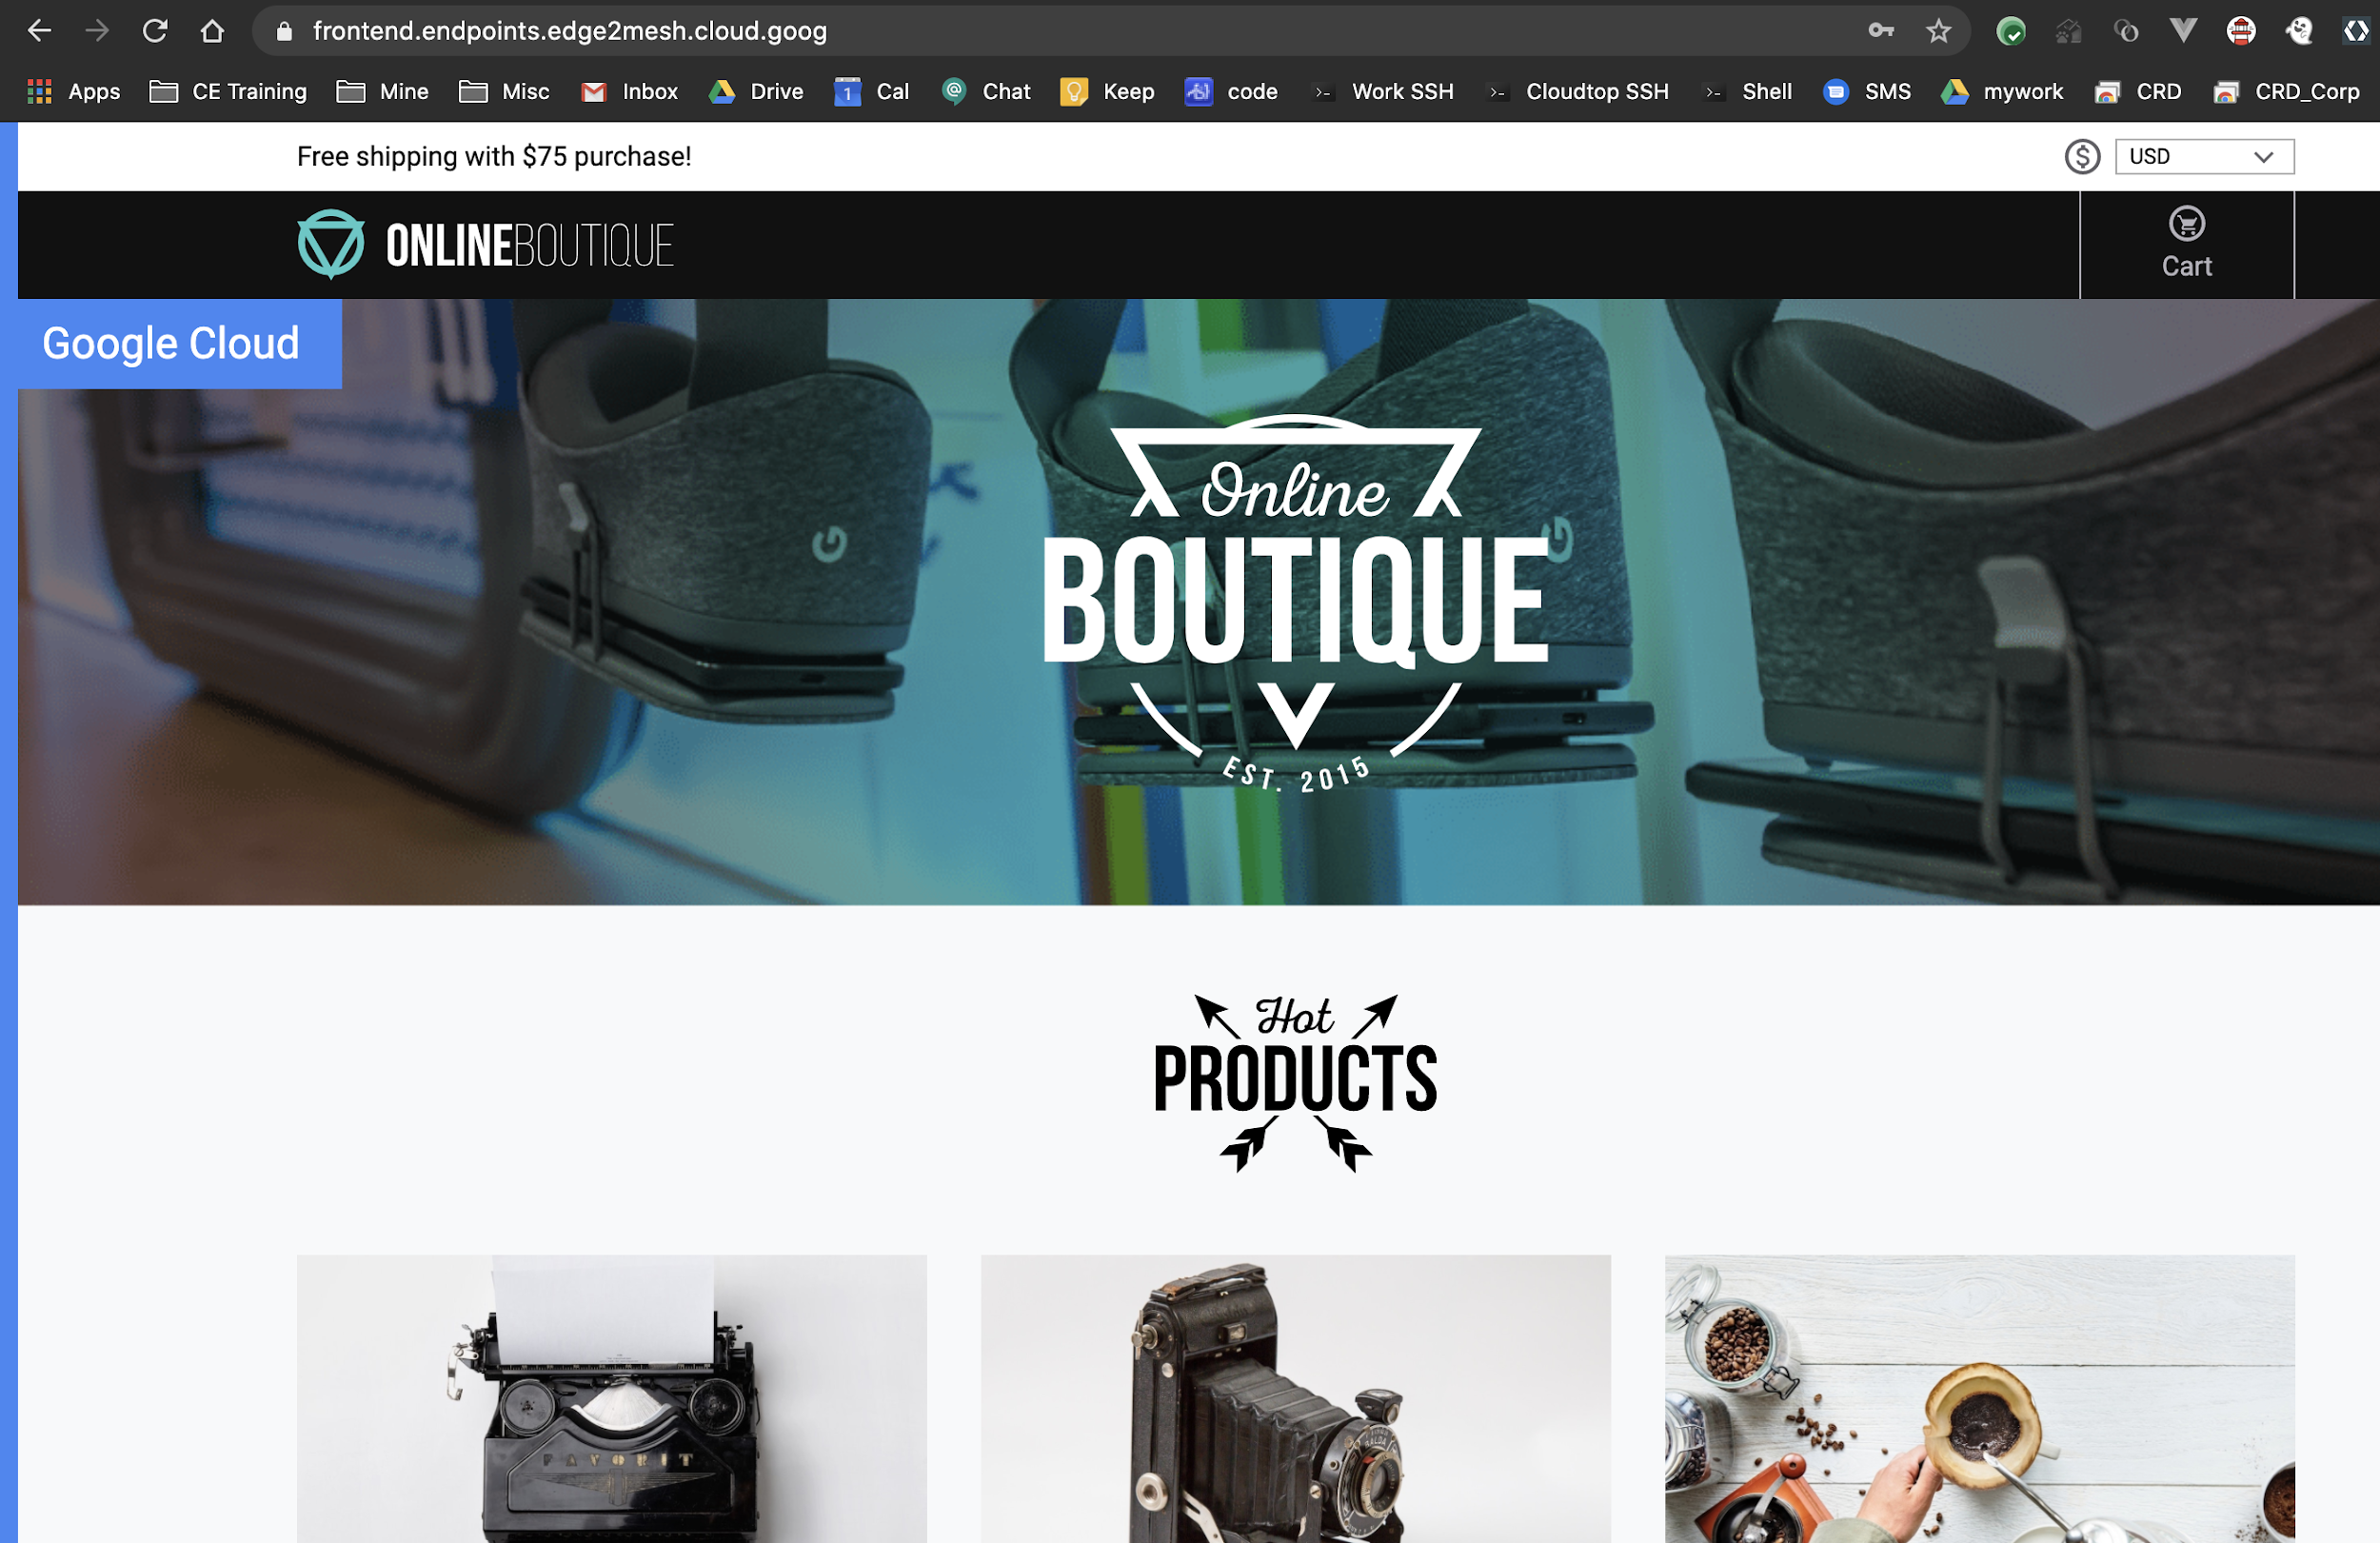 Prodotti mostrati nella home page di Online Boutique.